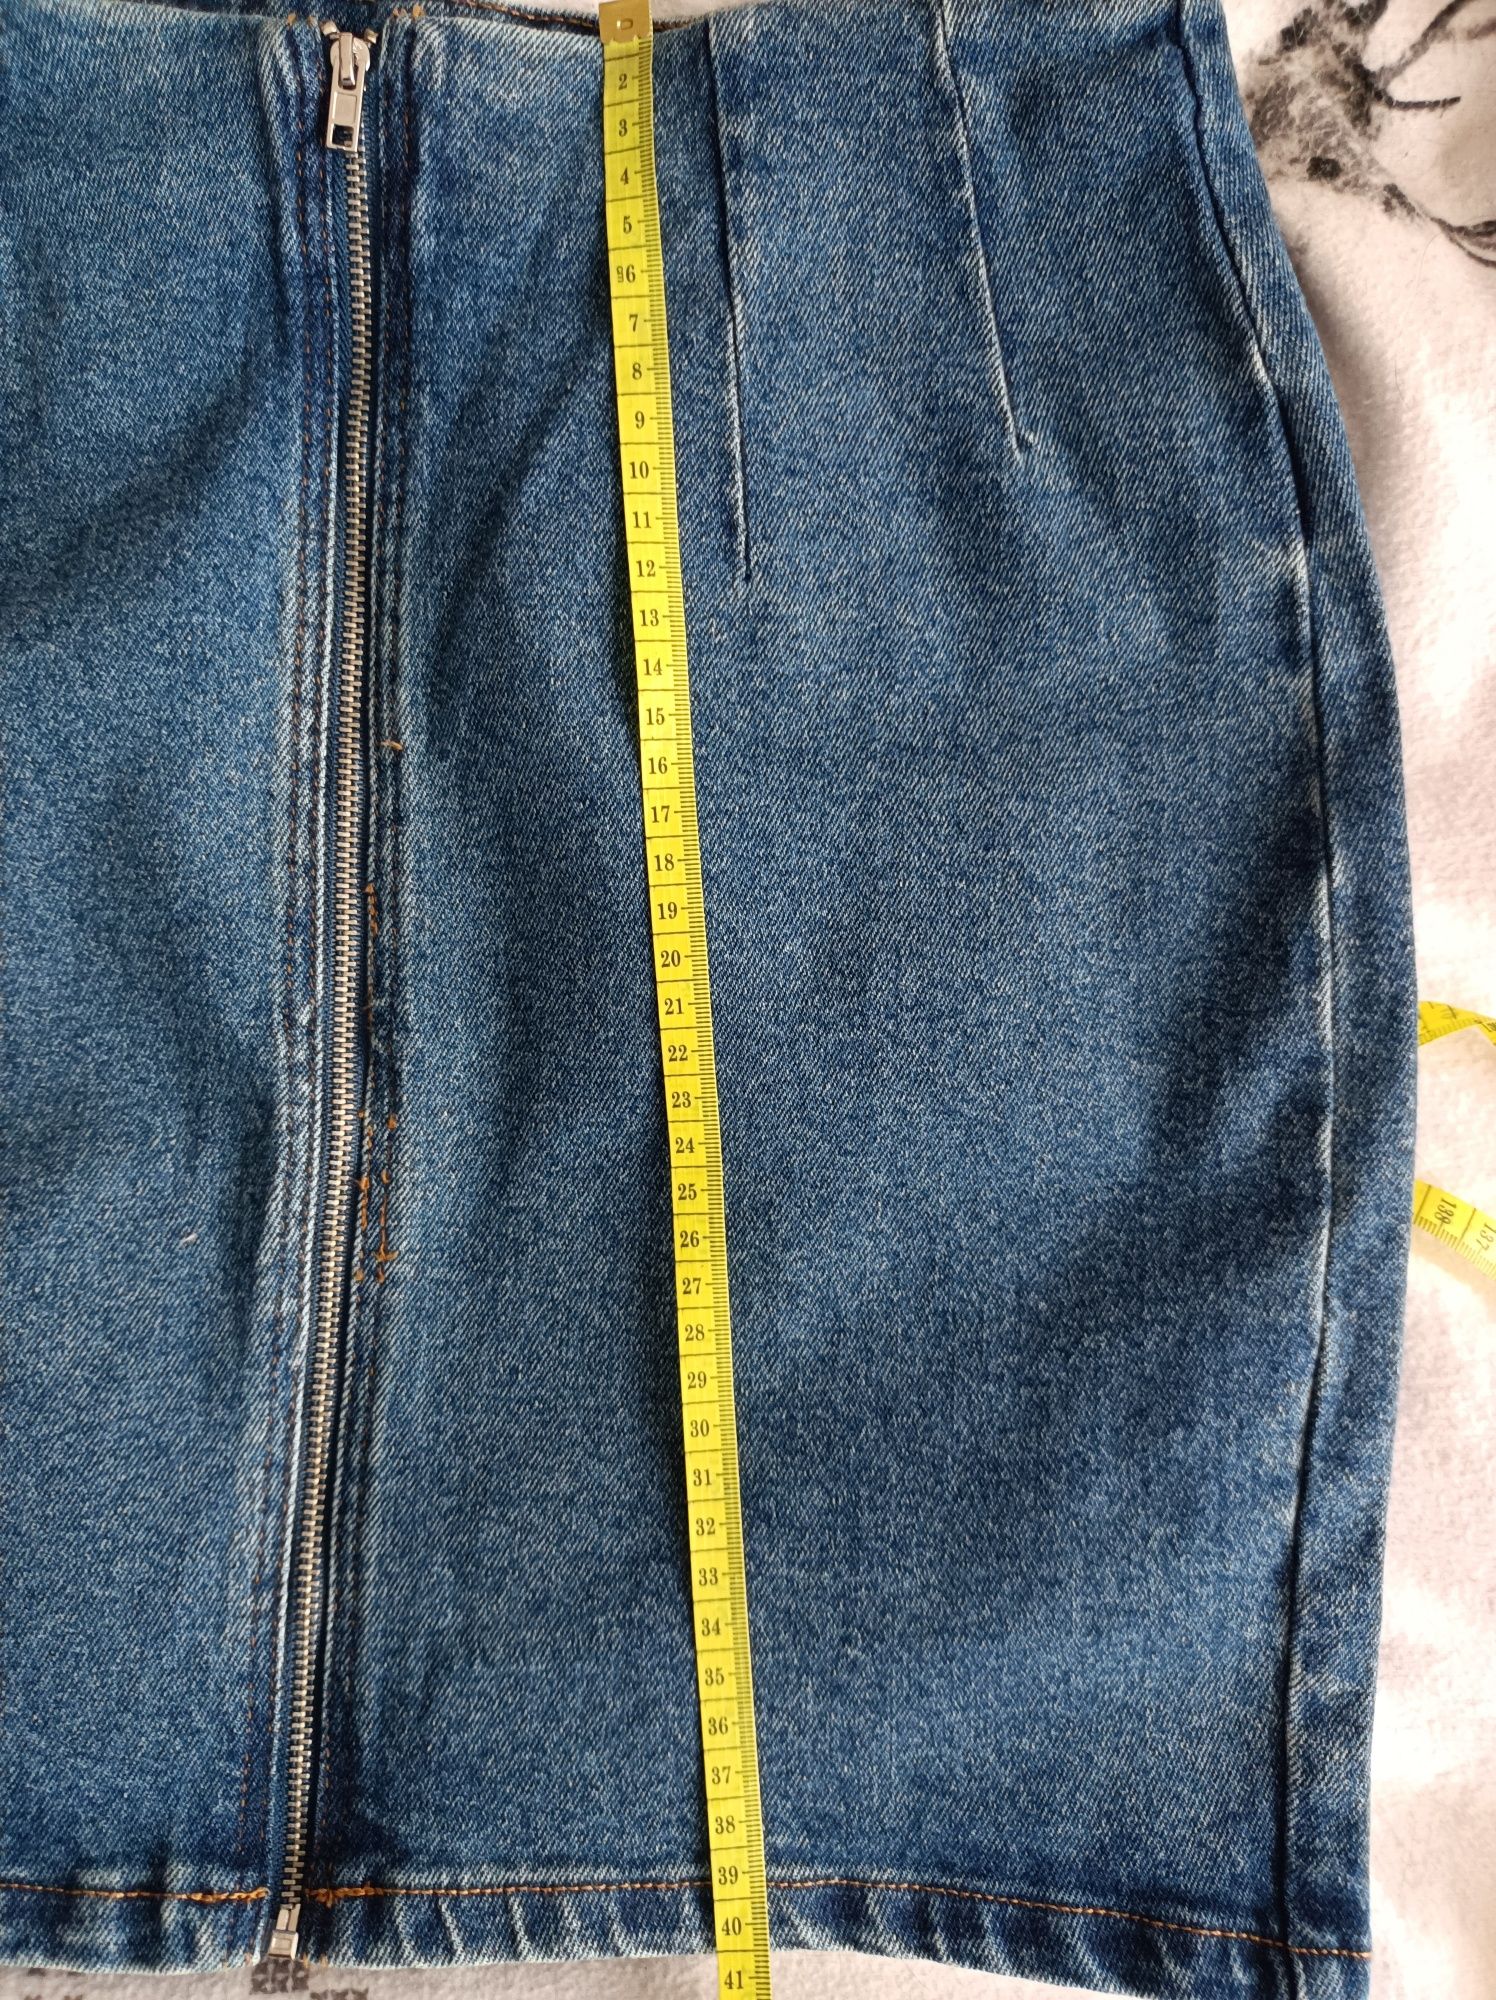 Nowa spódniczka damska denim jeansowa spódnica dżinsowa z zamkiem 36 s